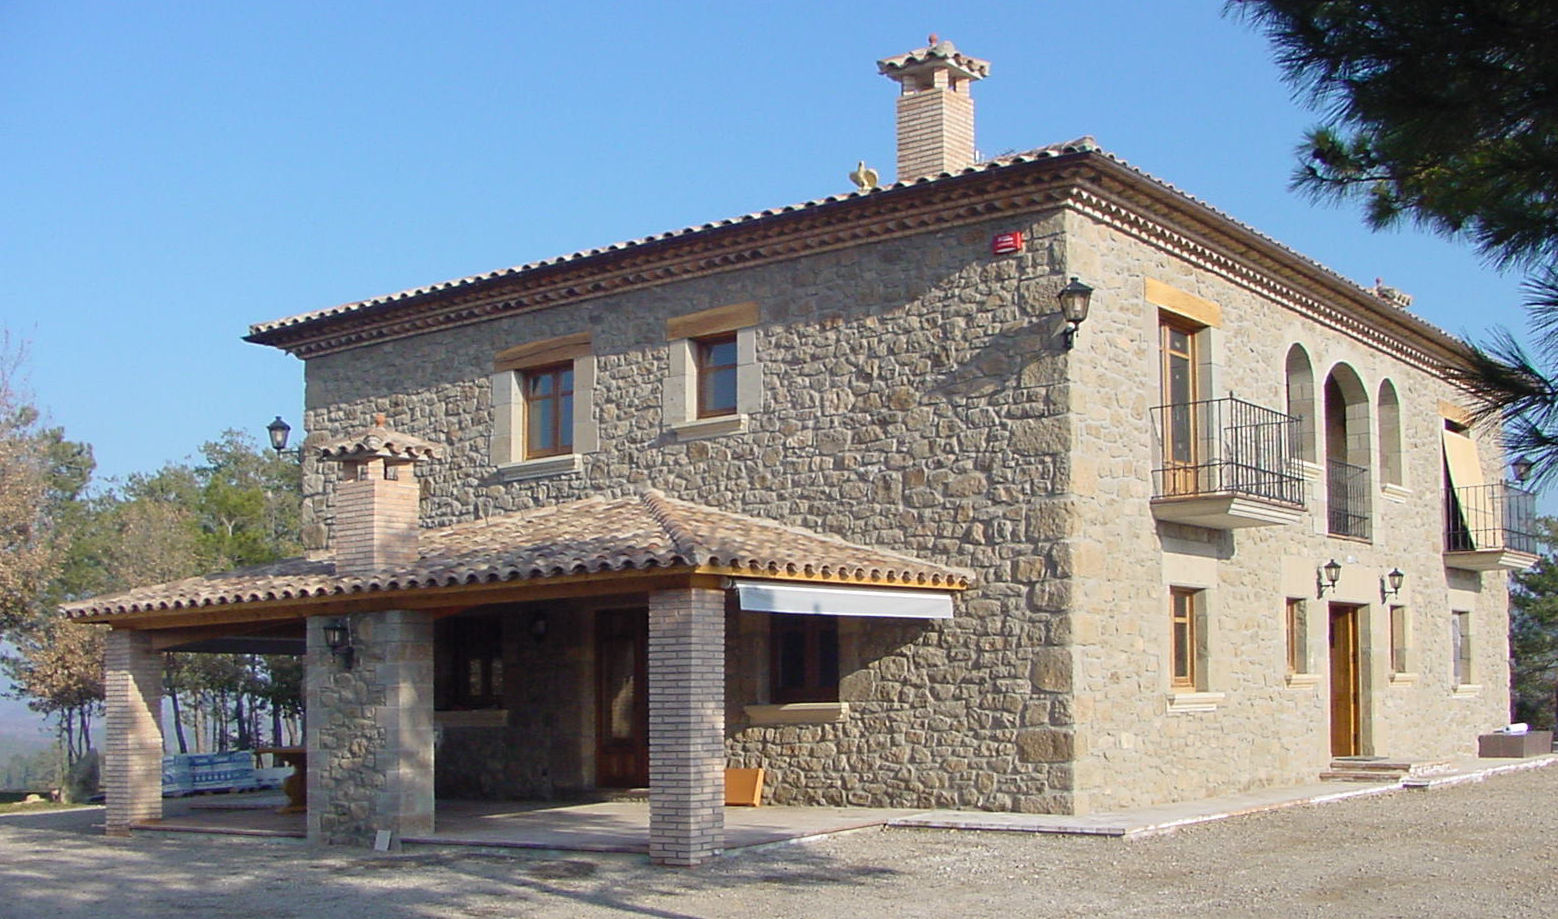 Casa de turismo rural en la Torre d'Oristà (Barcelona), ALENTORN i ALENTORN ARQUITECTES, SLP ALENTORN i ALENTORN ARQUITECTES, SLP Будинки Камінь